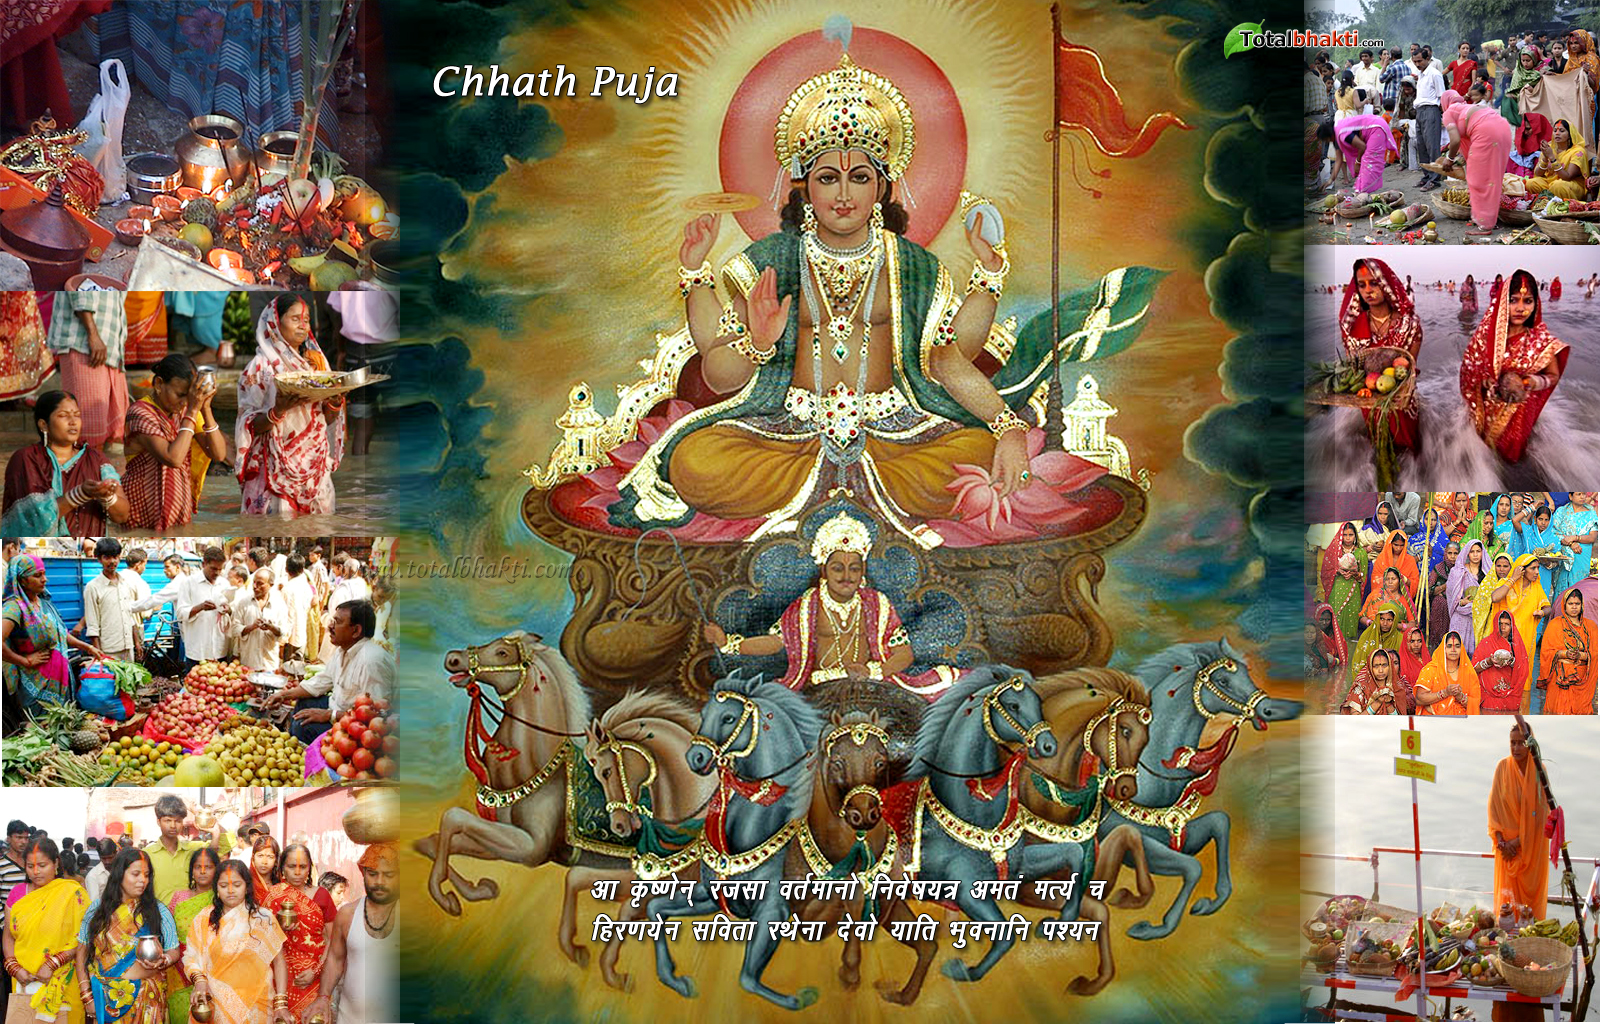 fond d'écran chhath puja,art,temple hindou,mythologie,gourou,lieu de culte